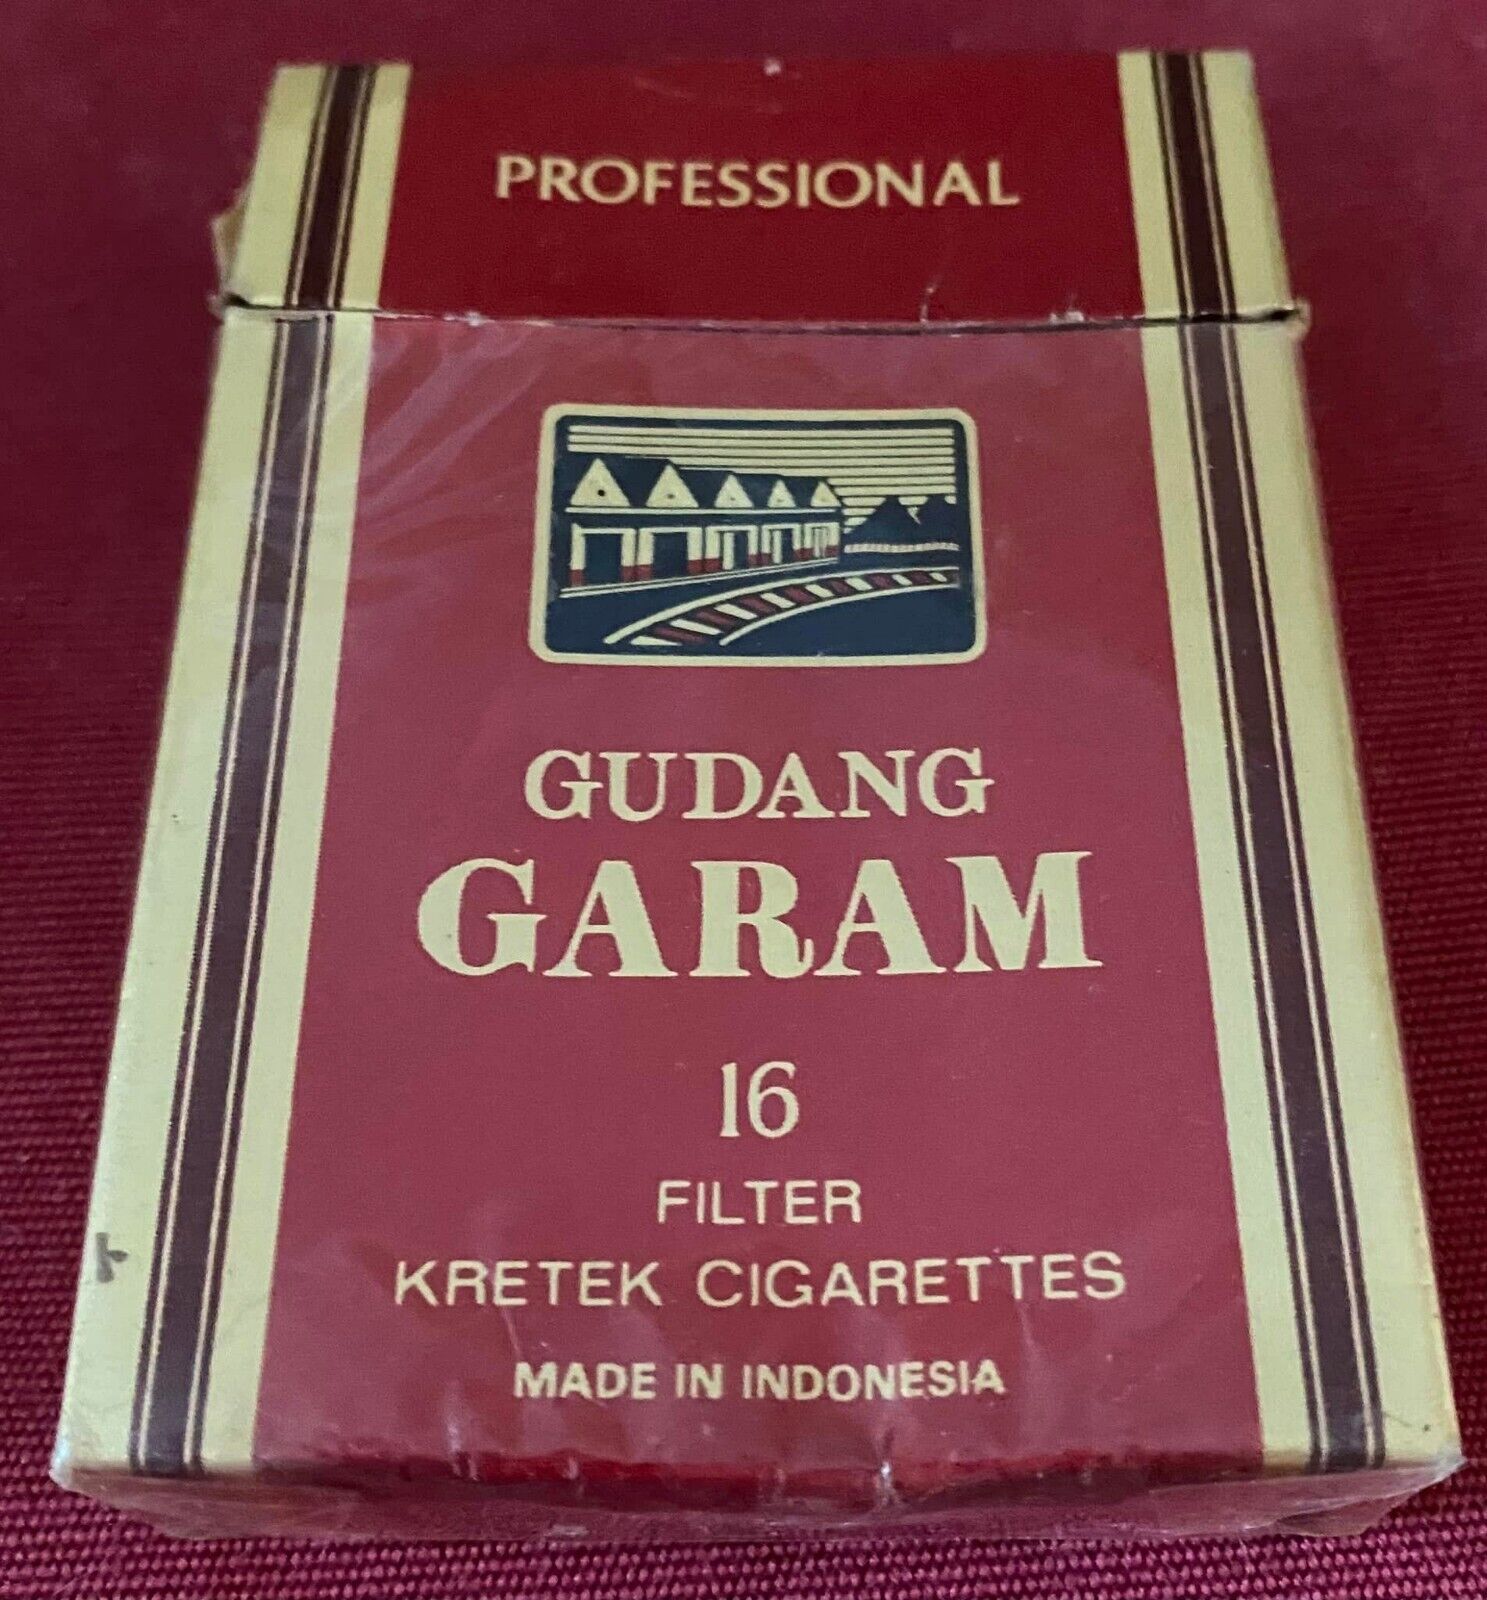 Vintage Gudang Garam Profissional Cigarette Cigarettes Cigarette Paper Box Empty